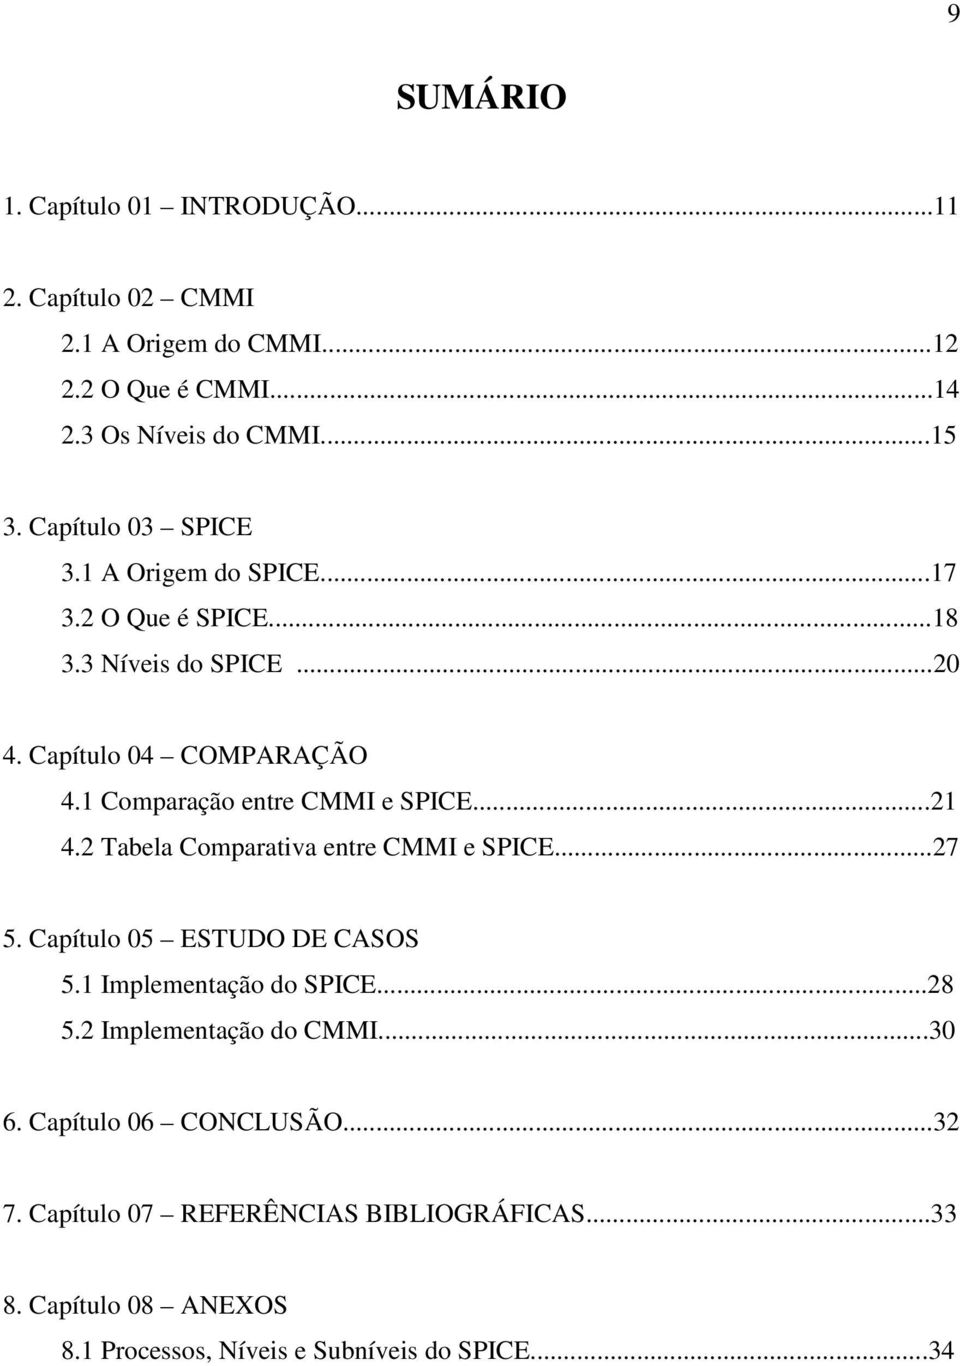 1 Comparação entre CMMI e SPICE...21 4.2 Tabela Comparativa entre CMMI e SPICE...27 5. Capítulo 05 ESTUDO DE CASOS 5.1 Implementação do SPICE.